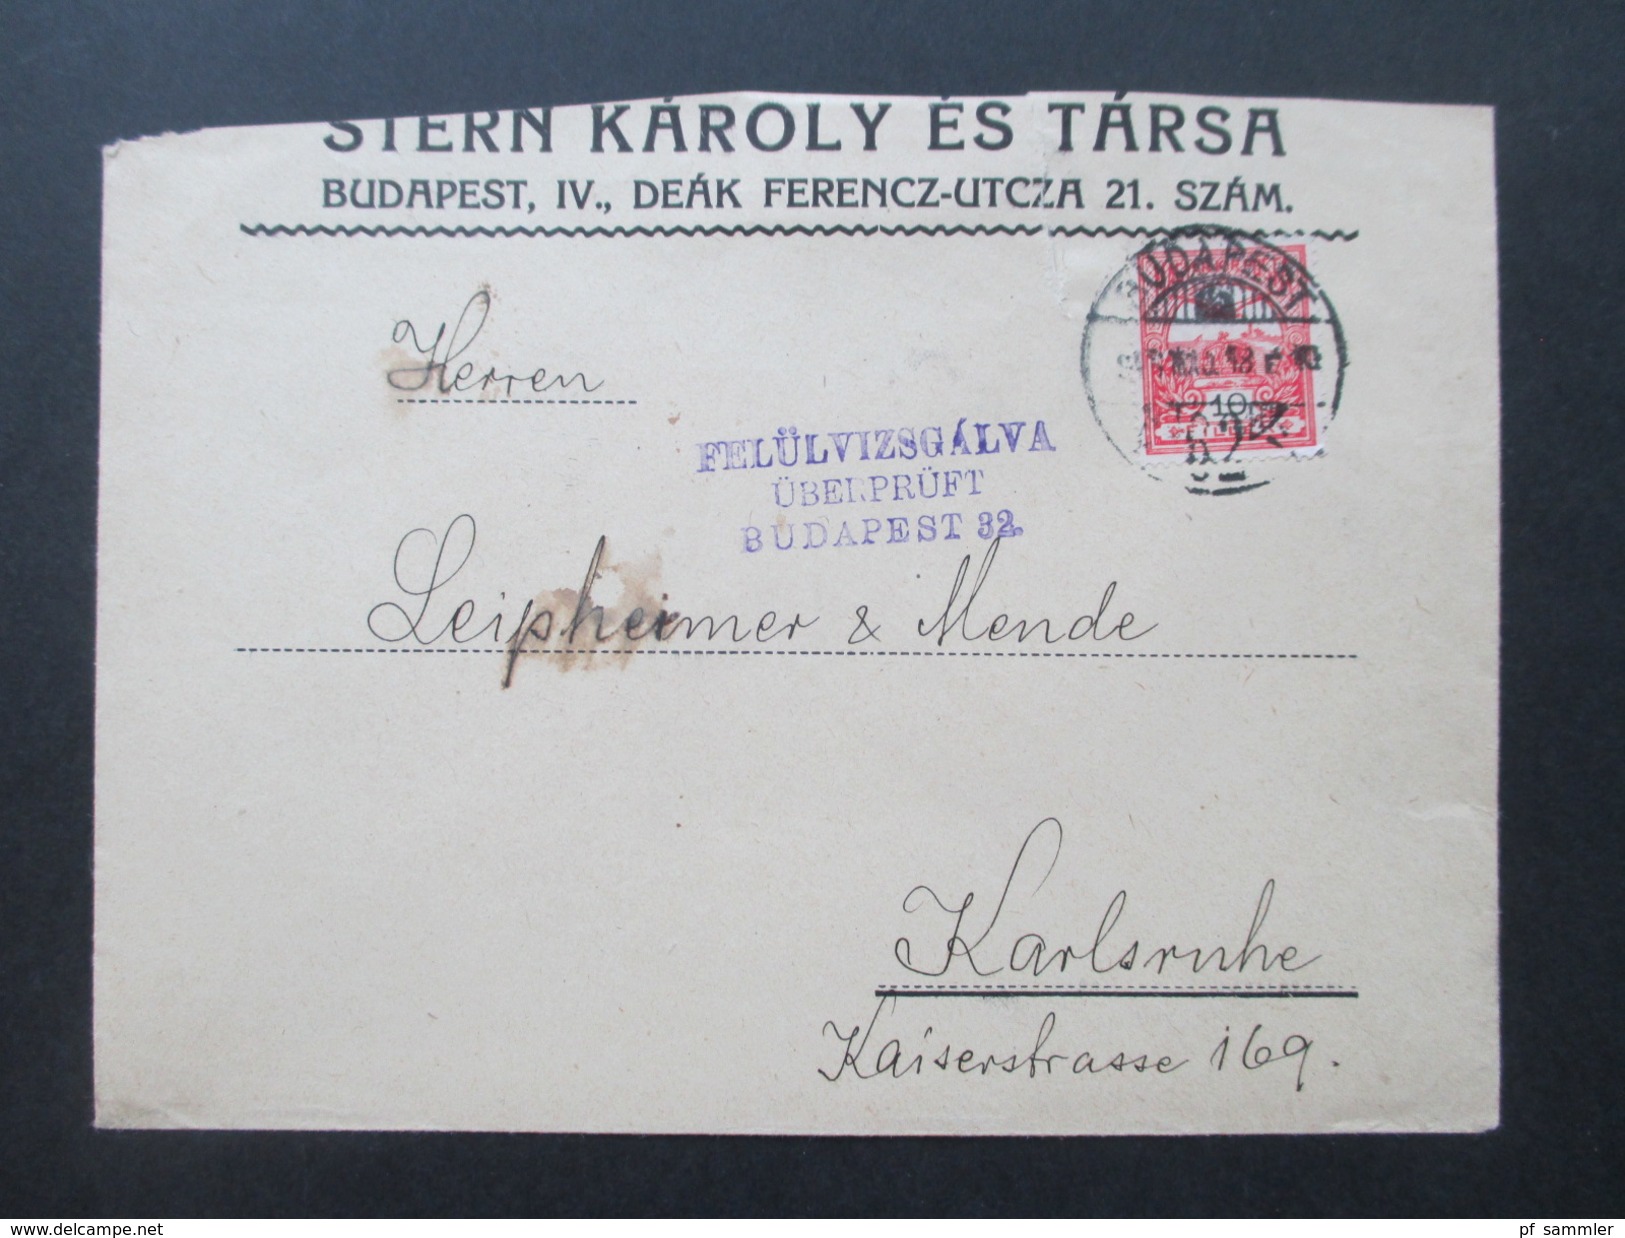 Ungarn 1918 Beleg / Zensutbeleg. Felülvizsgalva überprüft Budapest 32. Nach Karlsruhe. - Briefe U. Dokumente